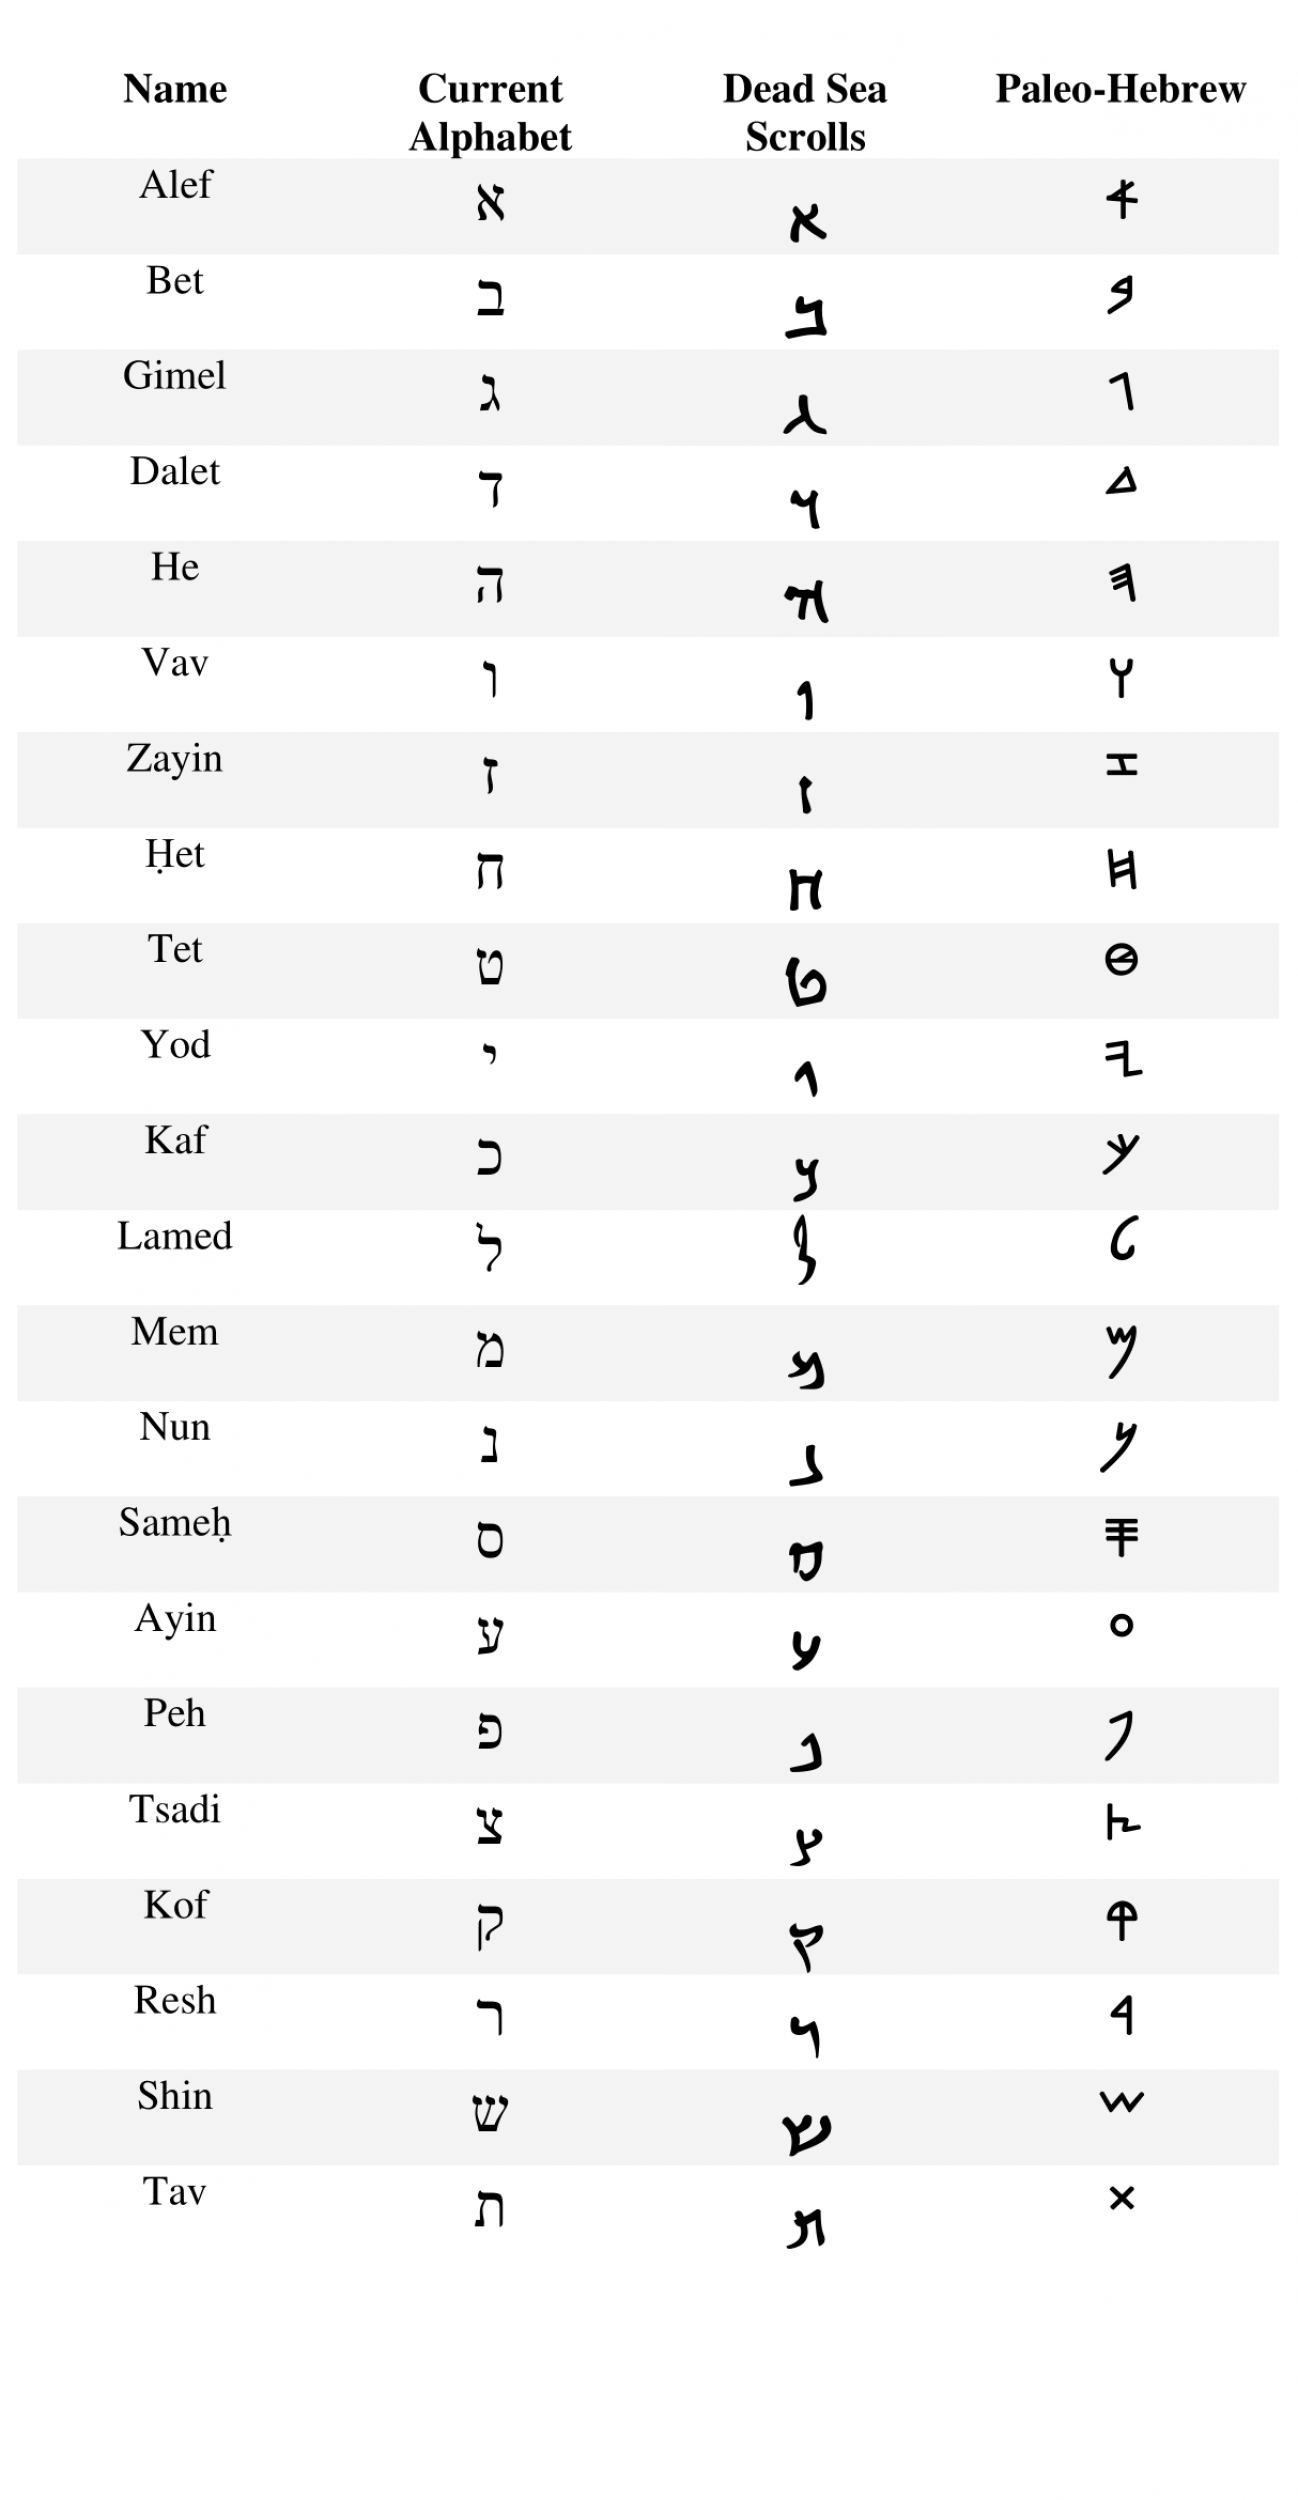 Paleo-Hebrew alphabet, aramaic and square